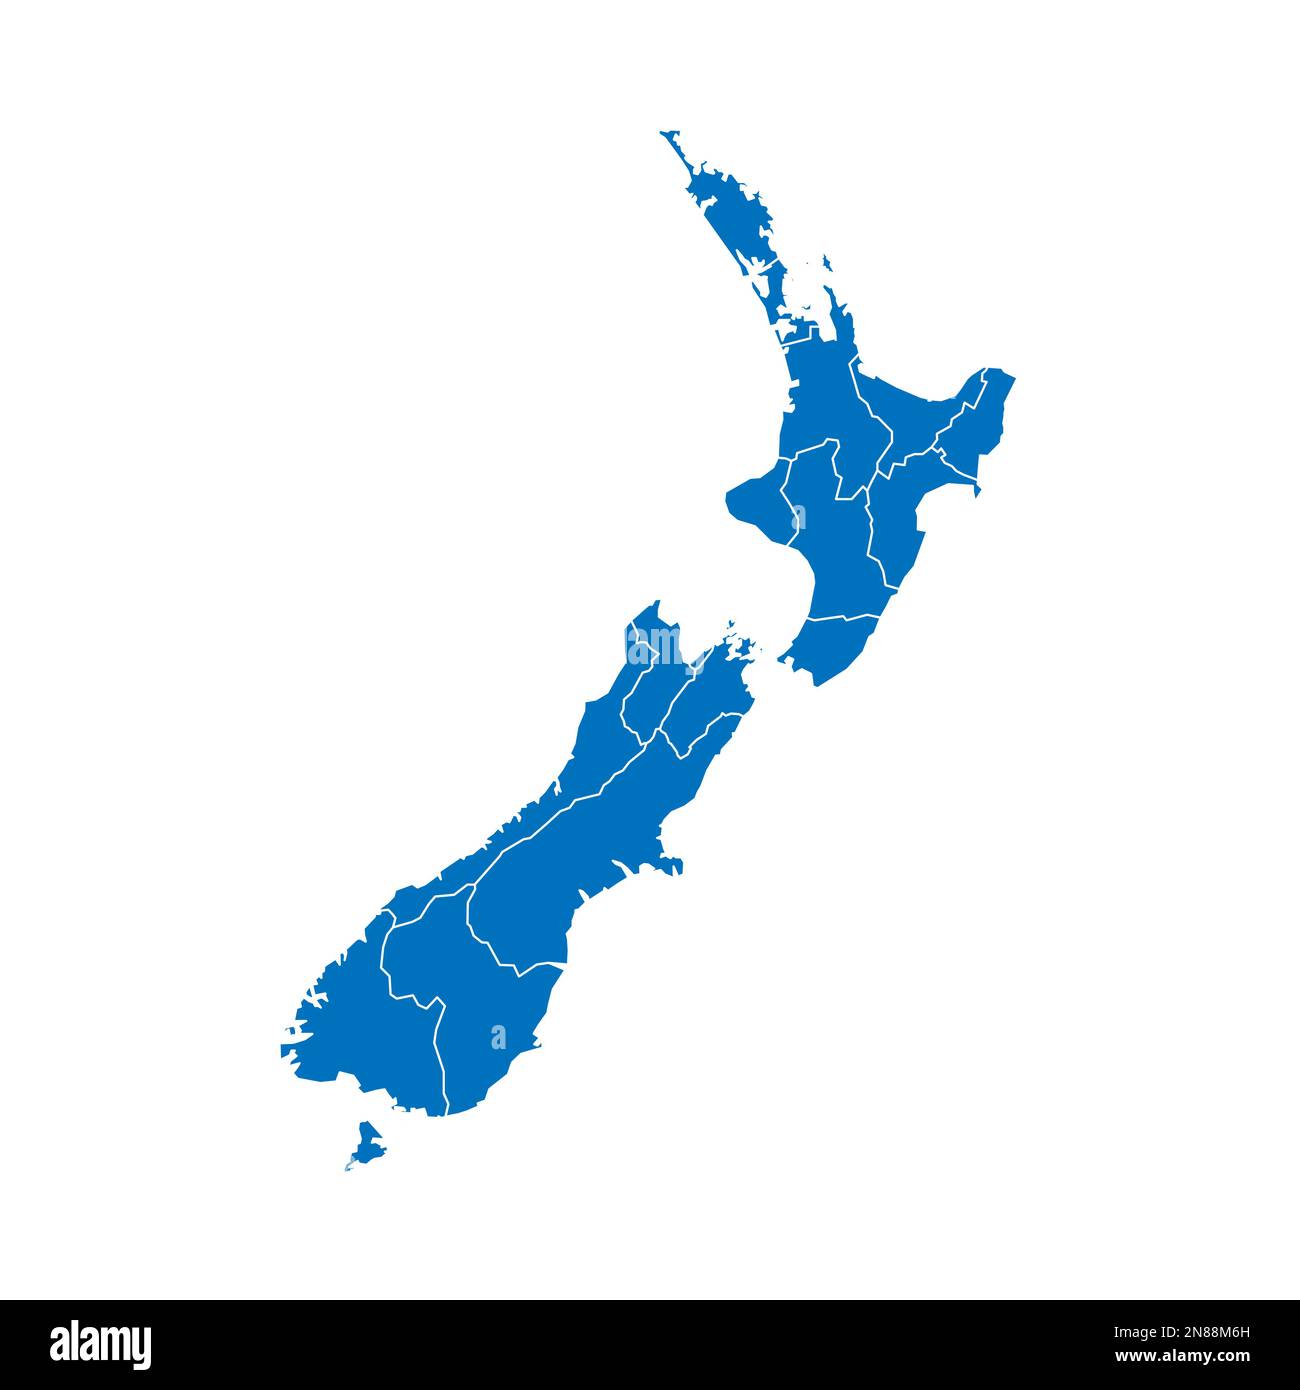 Neuseeländische politische Karte der Verwaltungsabteilungen - Regionen. Blau leuchtende leere Vektorkarte mit weißen Rändern. Stock Vektor